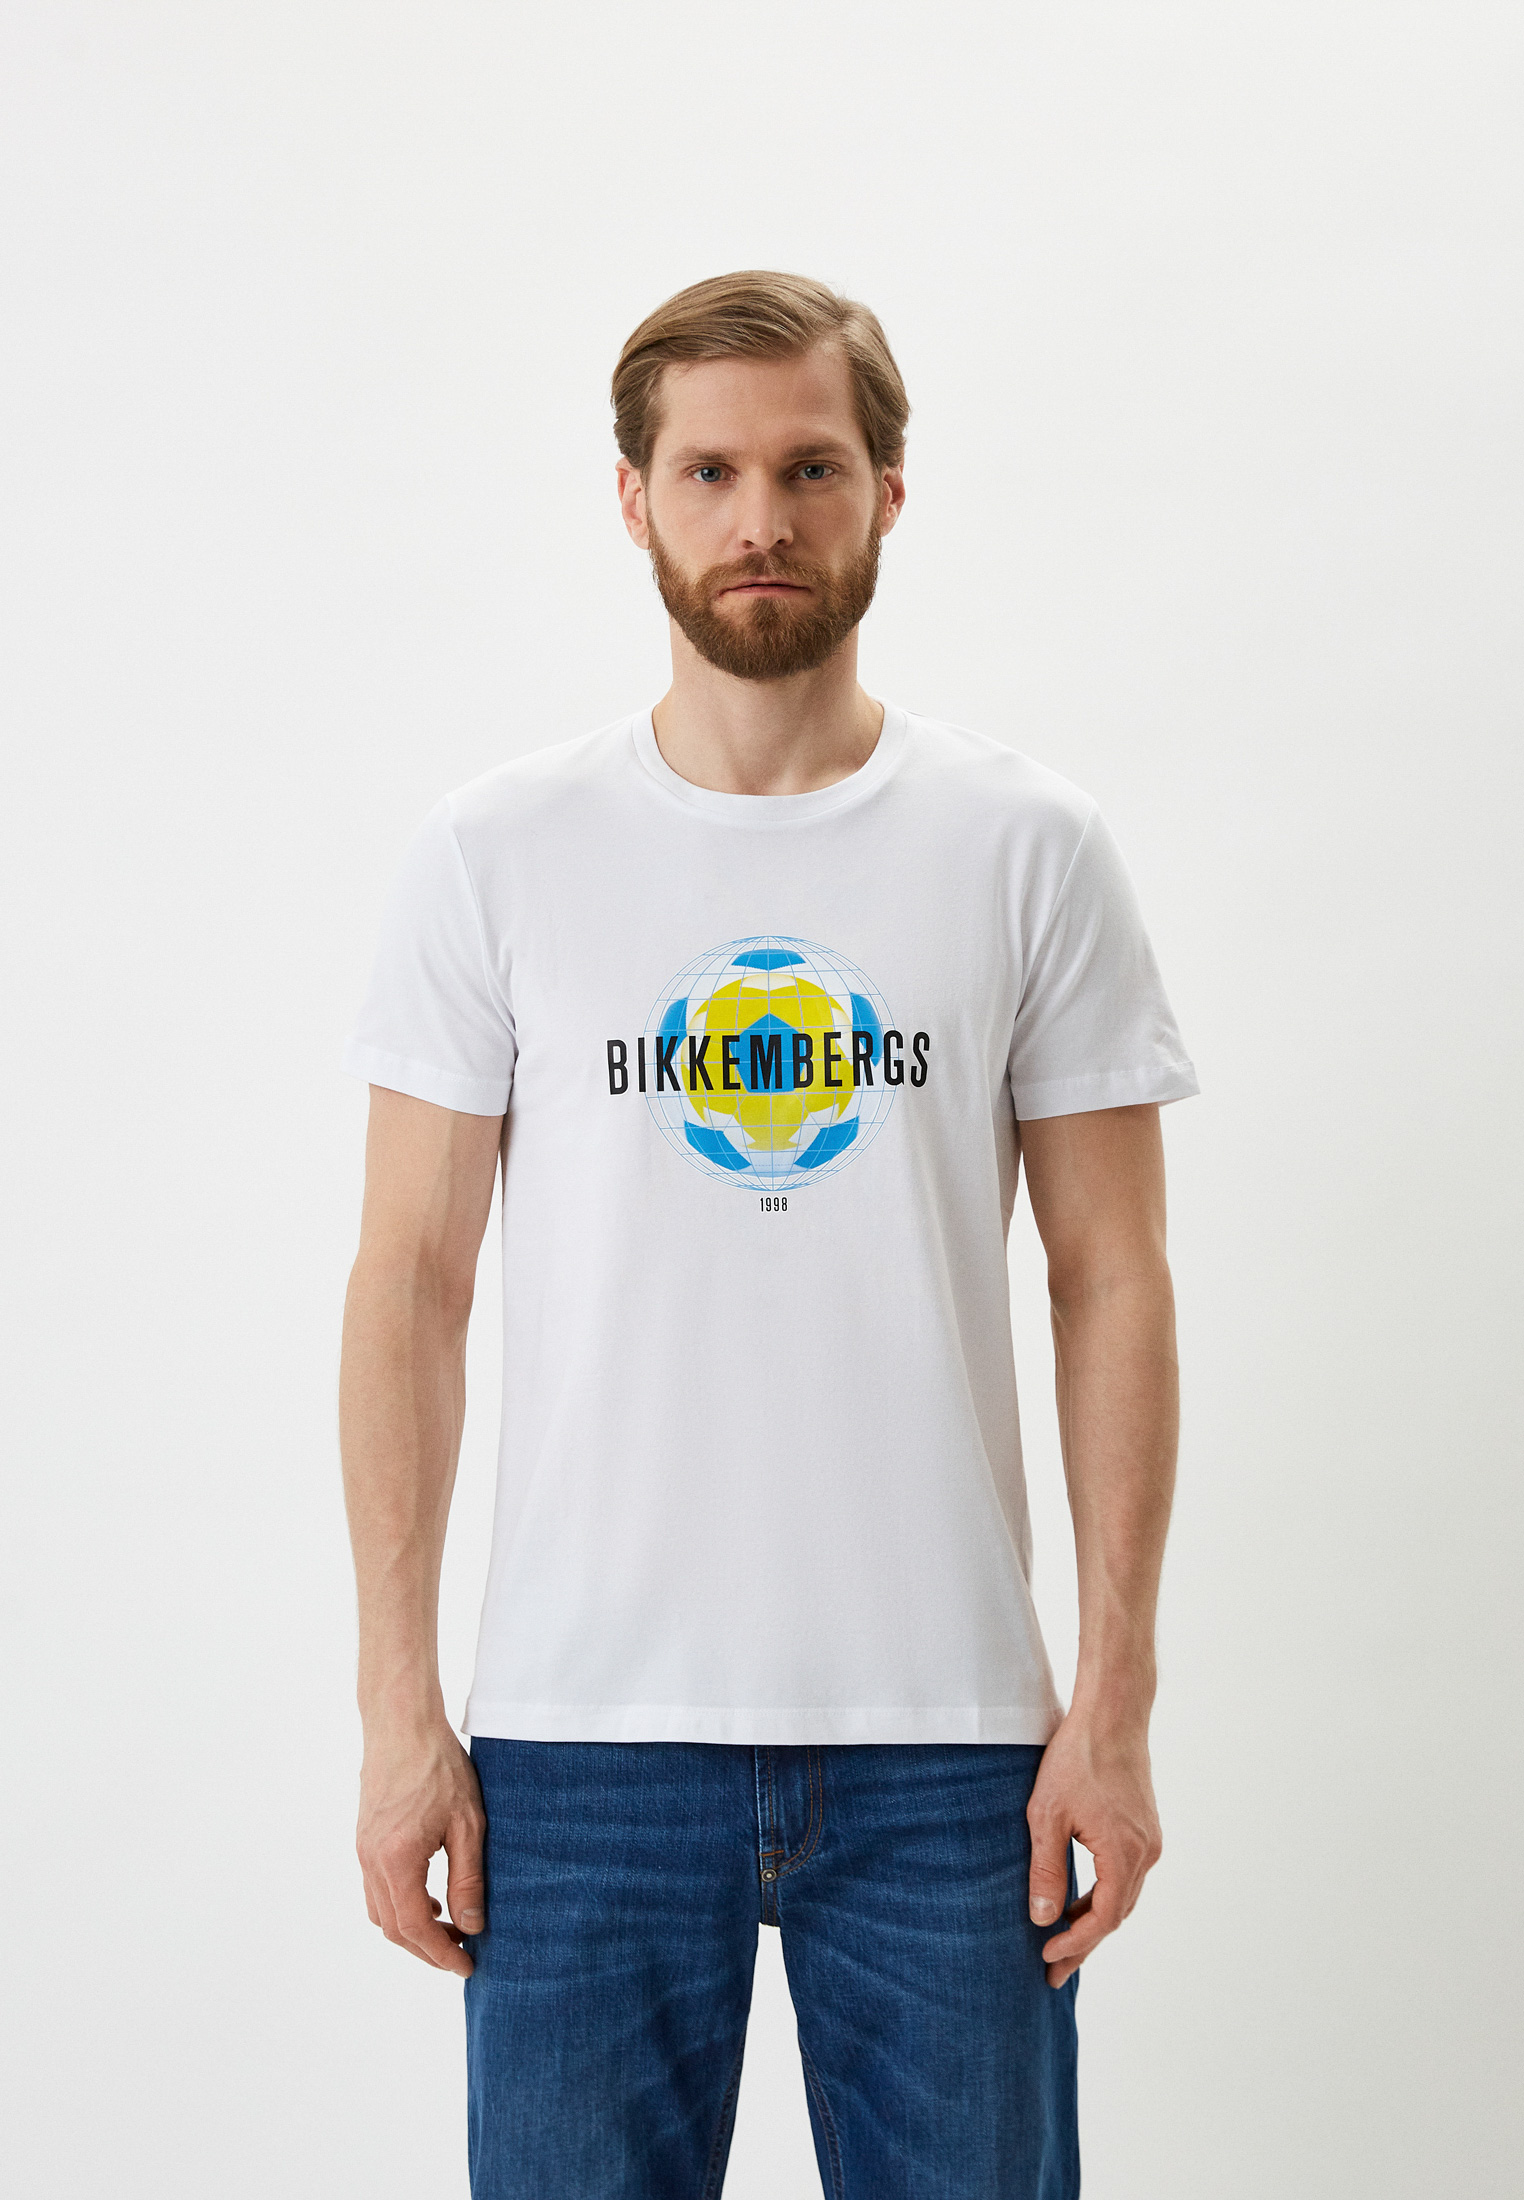 Мужская футболка Bikkembergs (Биккембергс) C 4 101 07 E 2231: изображение 1